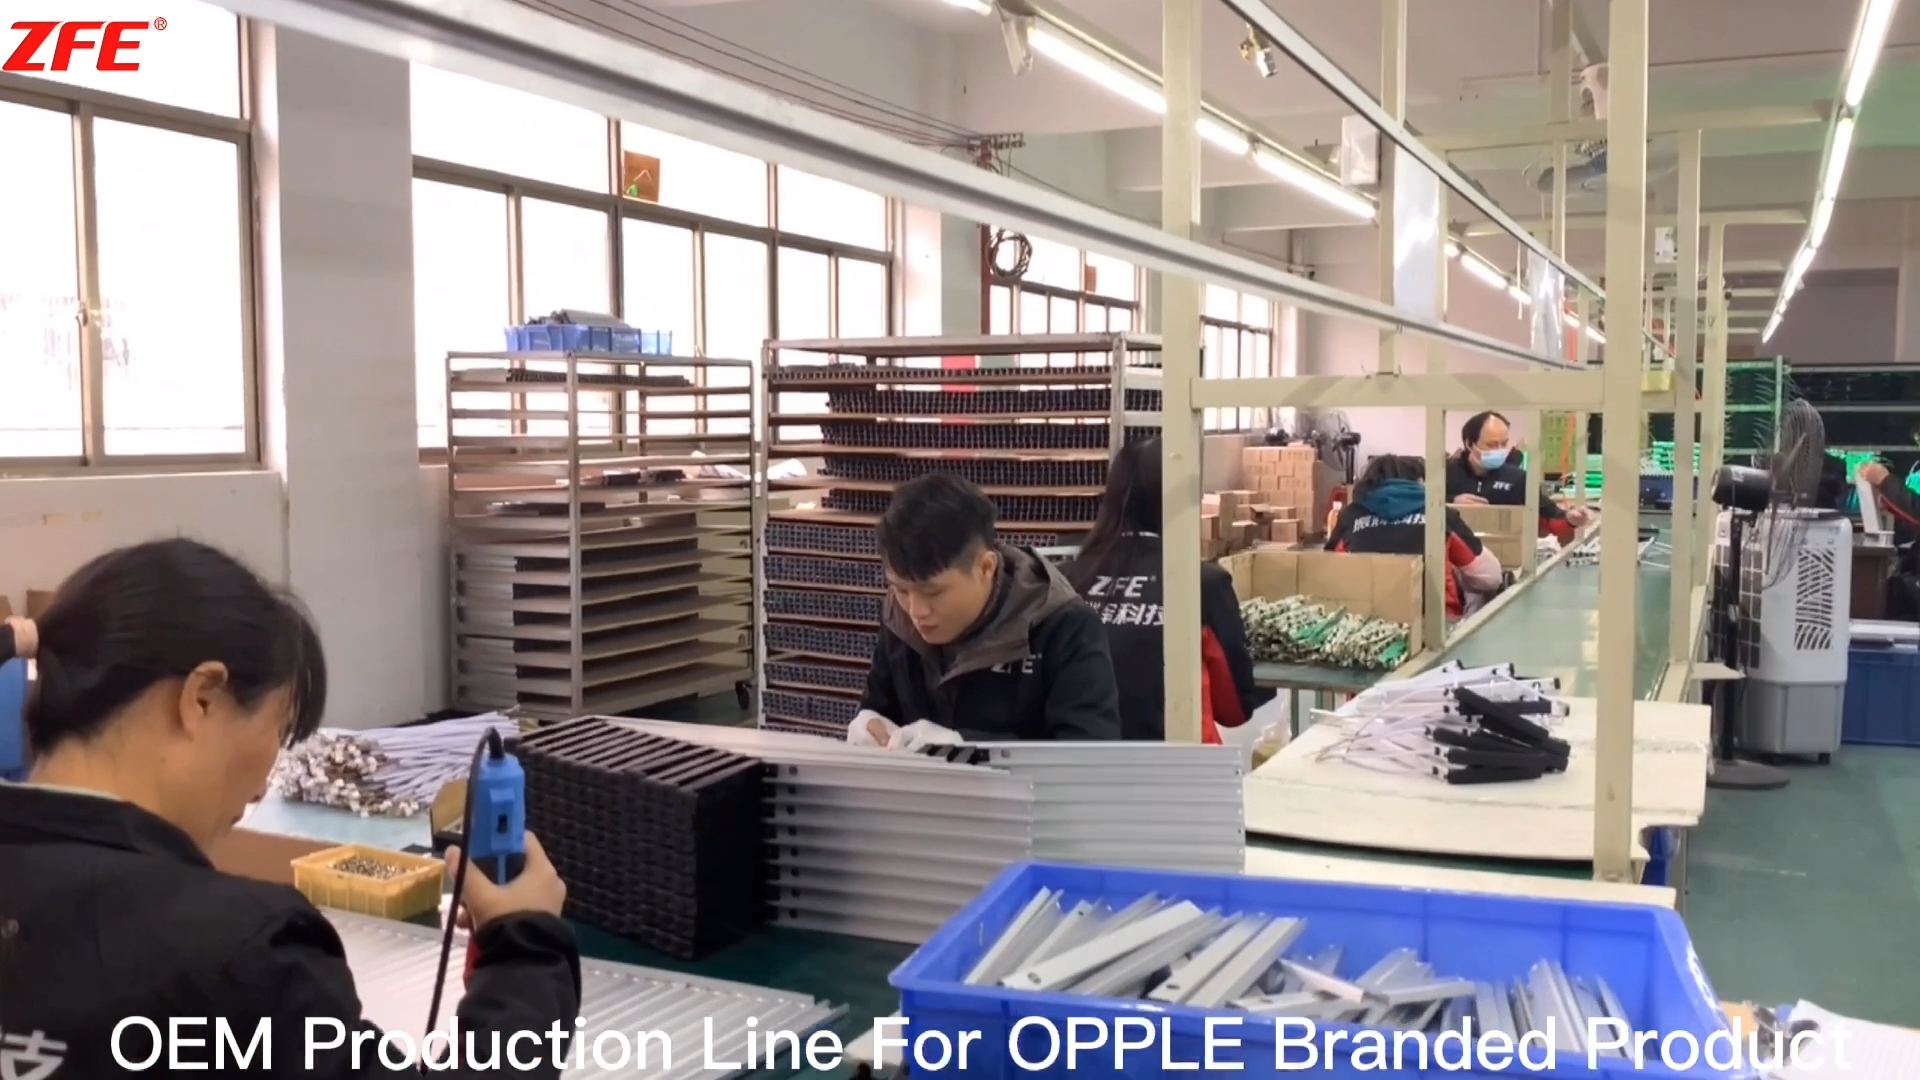 Հարմարեցված OEM արտադրական գիծ OPPLE ֆիրմային արտադրանքի համար, որը արտադրվում է Guangdong Zhenhui Fire Technology-ի կողմից